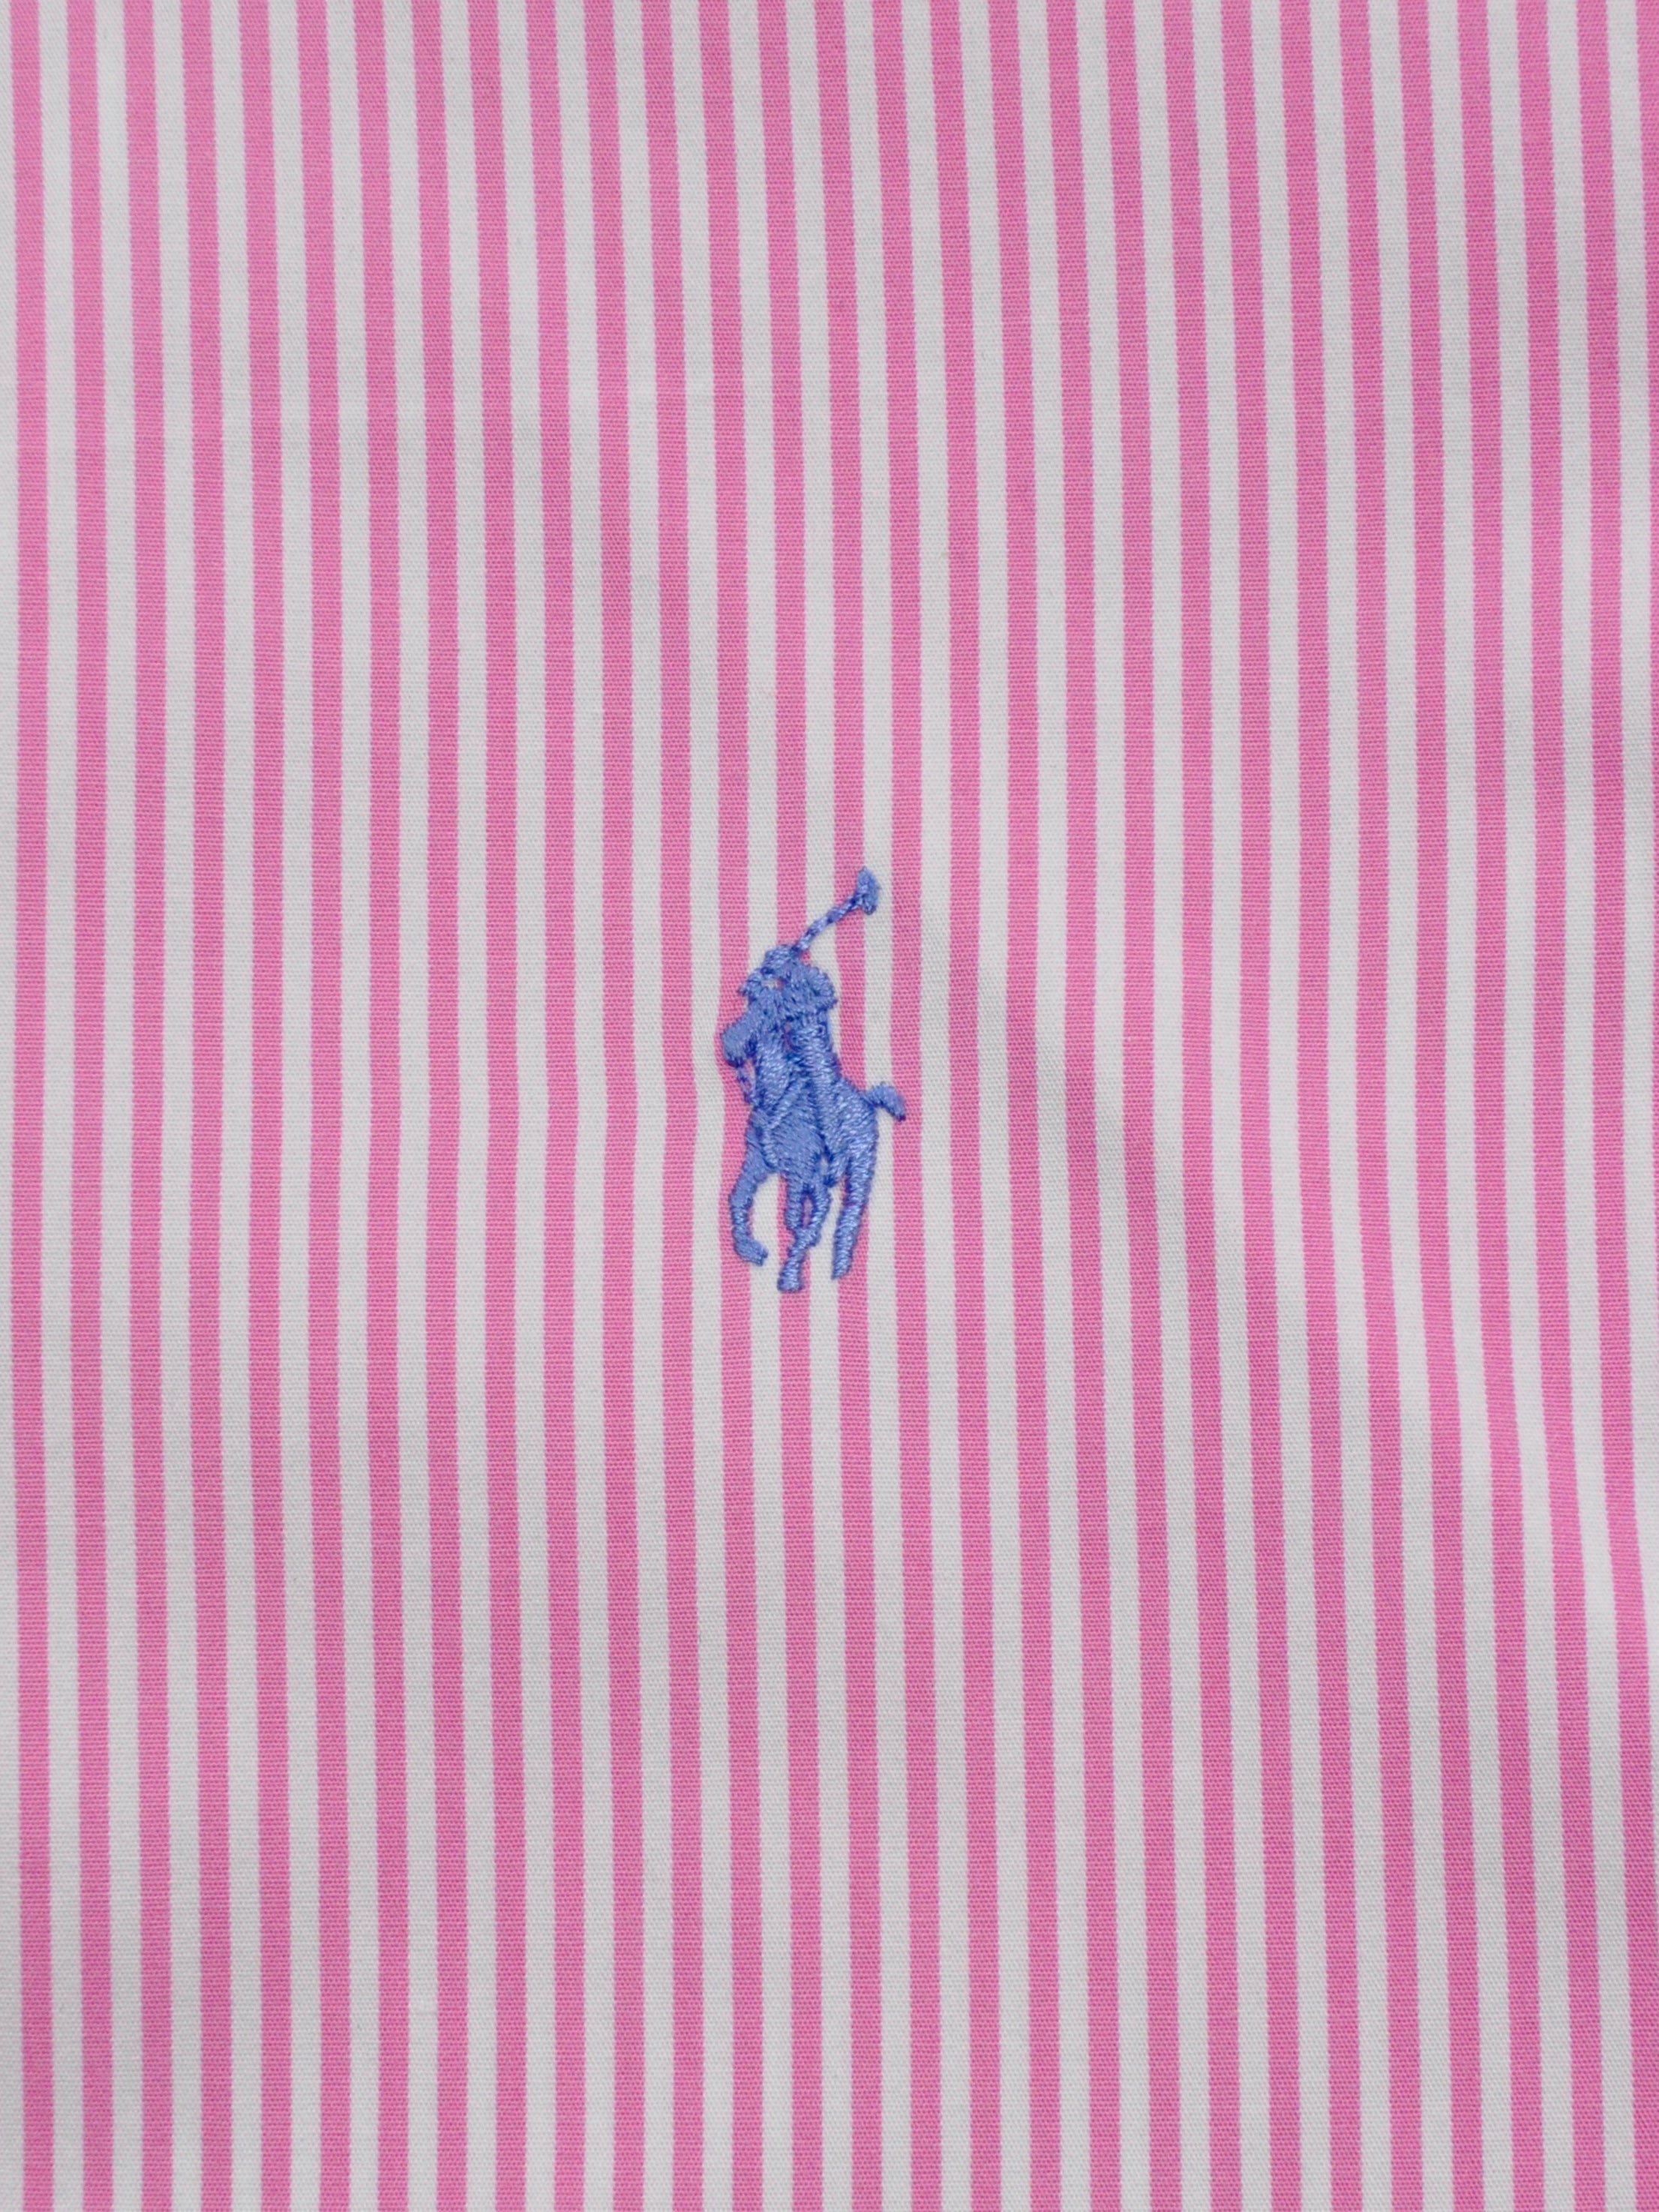 Vintage Stripe Short Sleeve Shirt - Pink